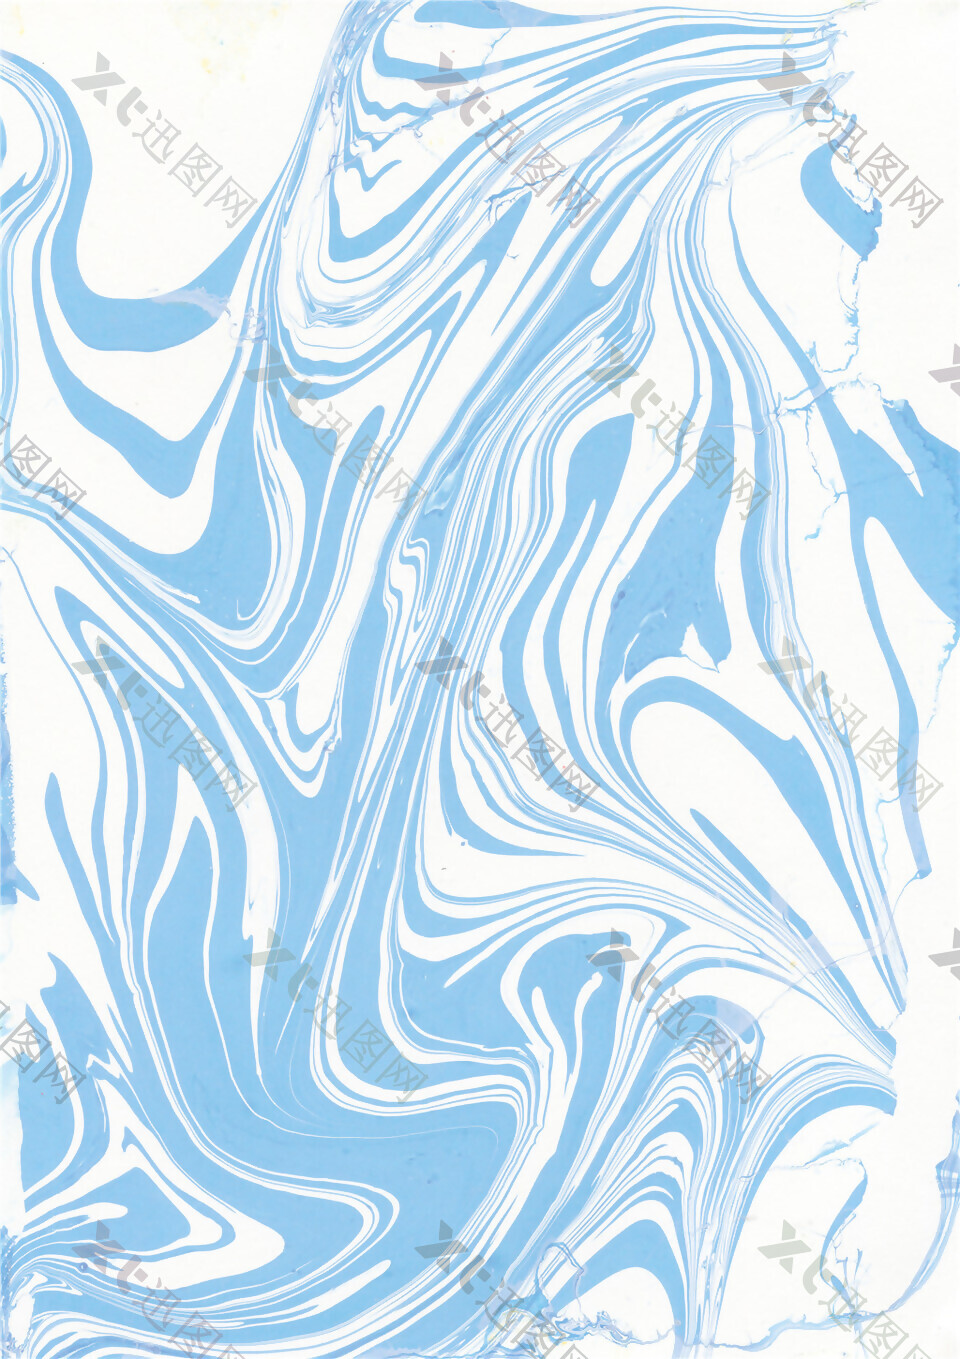 海洋气息清新蓝色波纹纹理壁纸图案装饰设计